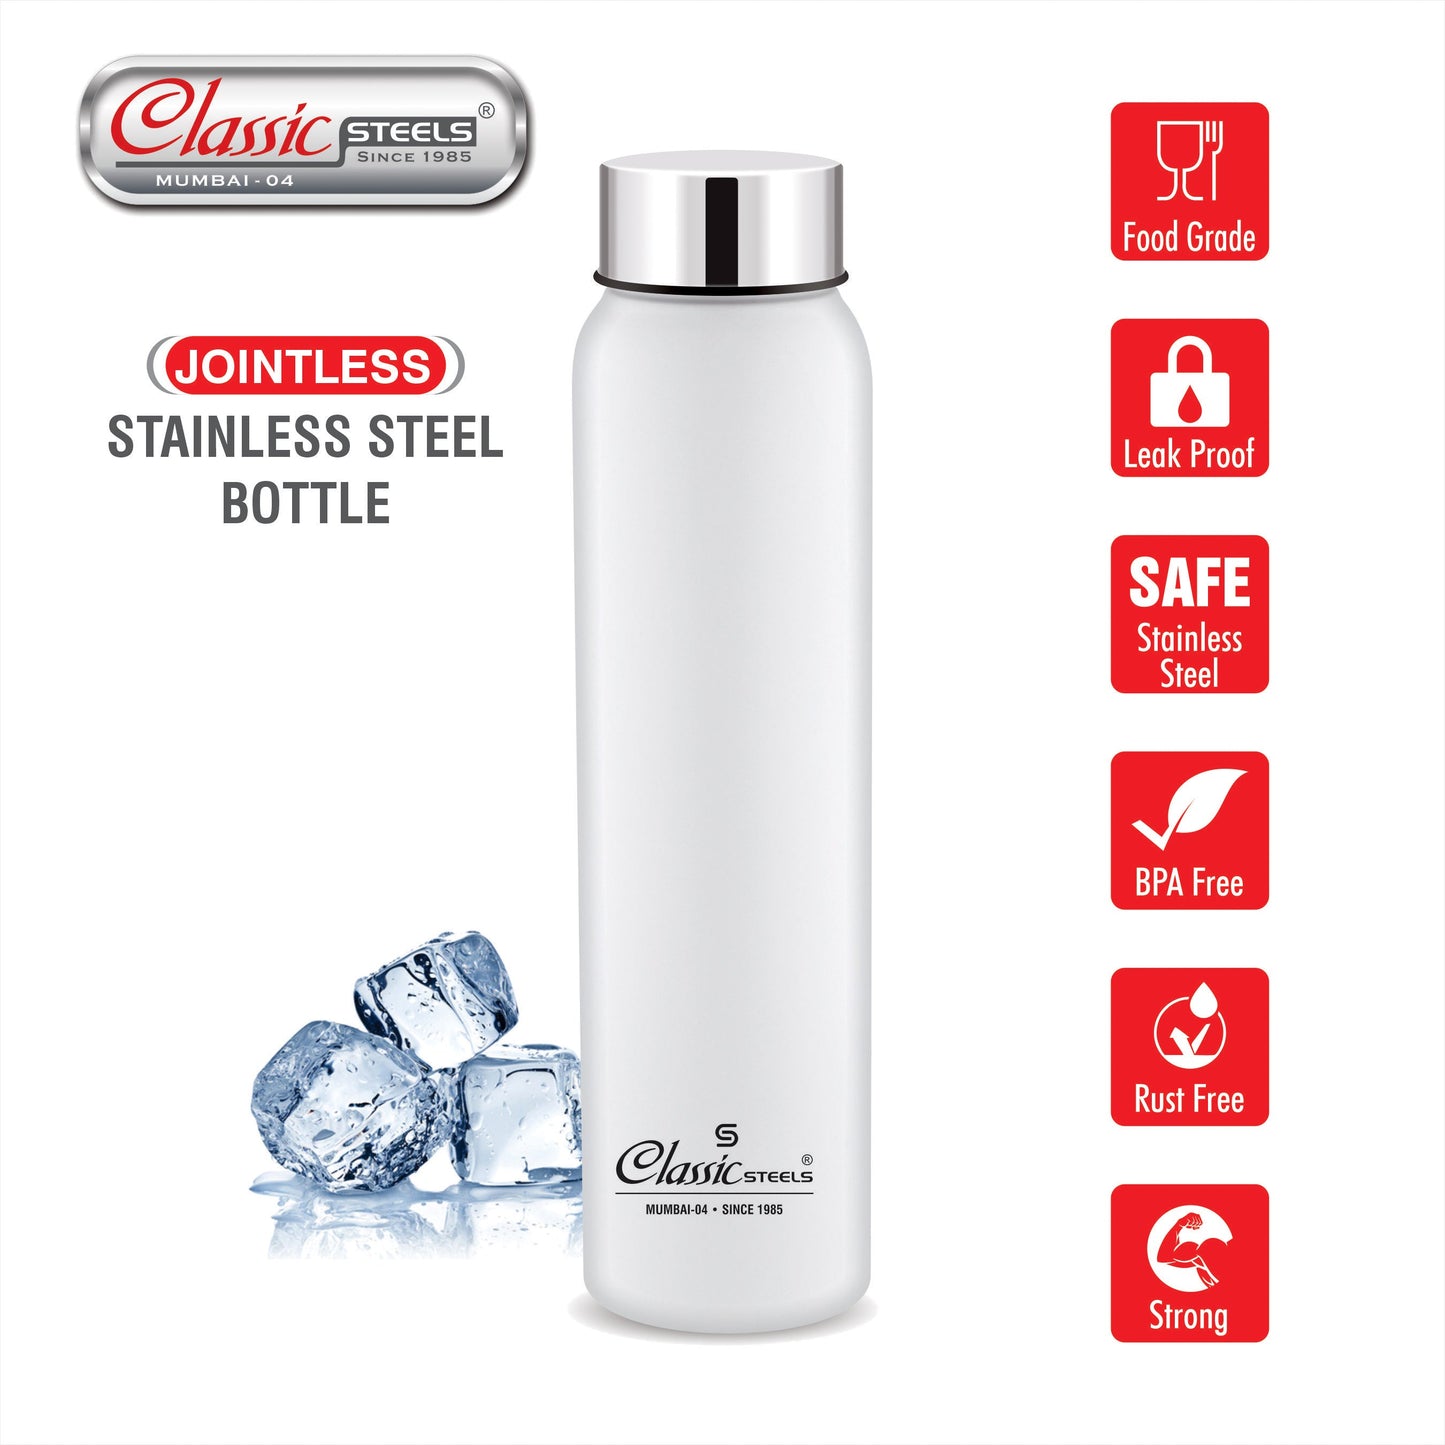 Jointless Bottle : Single Wall Stainless Steel Bottle Classic Steels